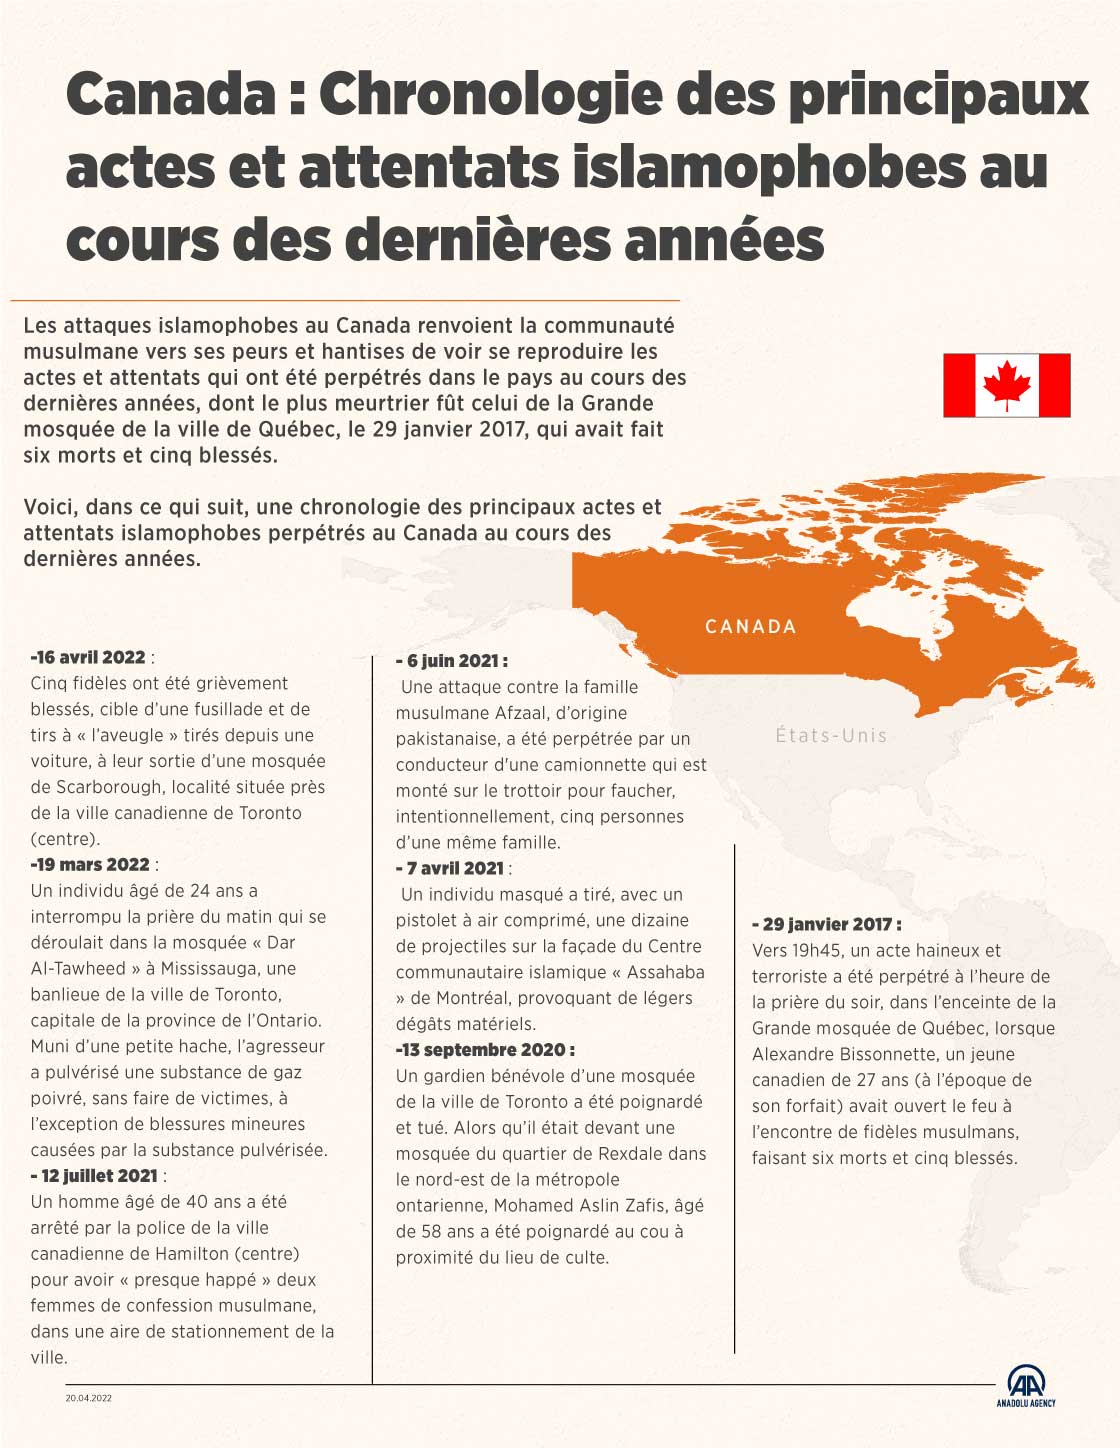 Canada : Chronologie des principaux actes et attentats islamophobes au cours des dernières années 